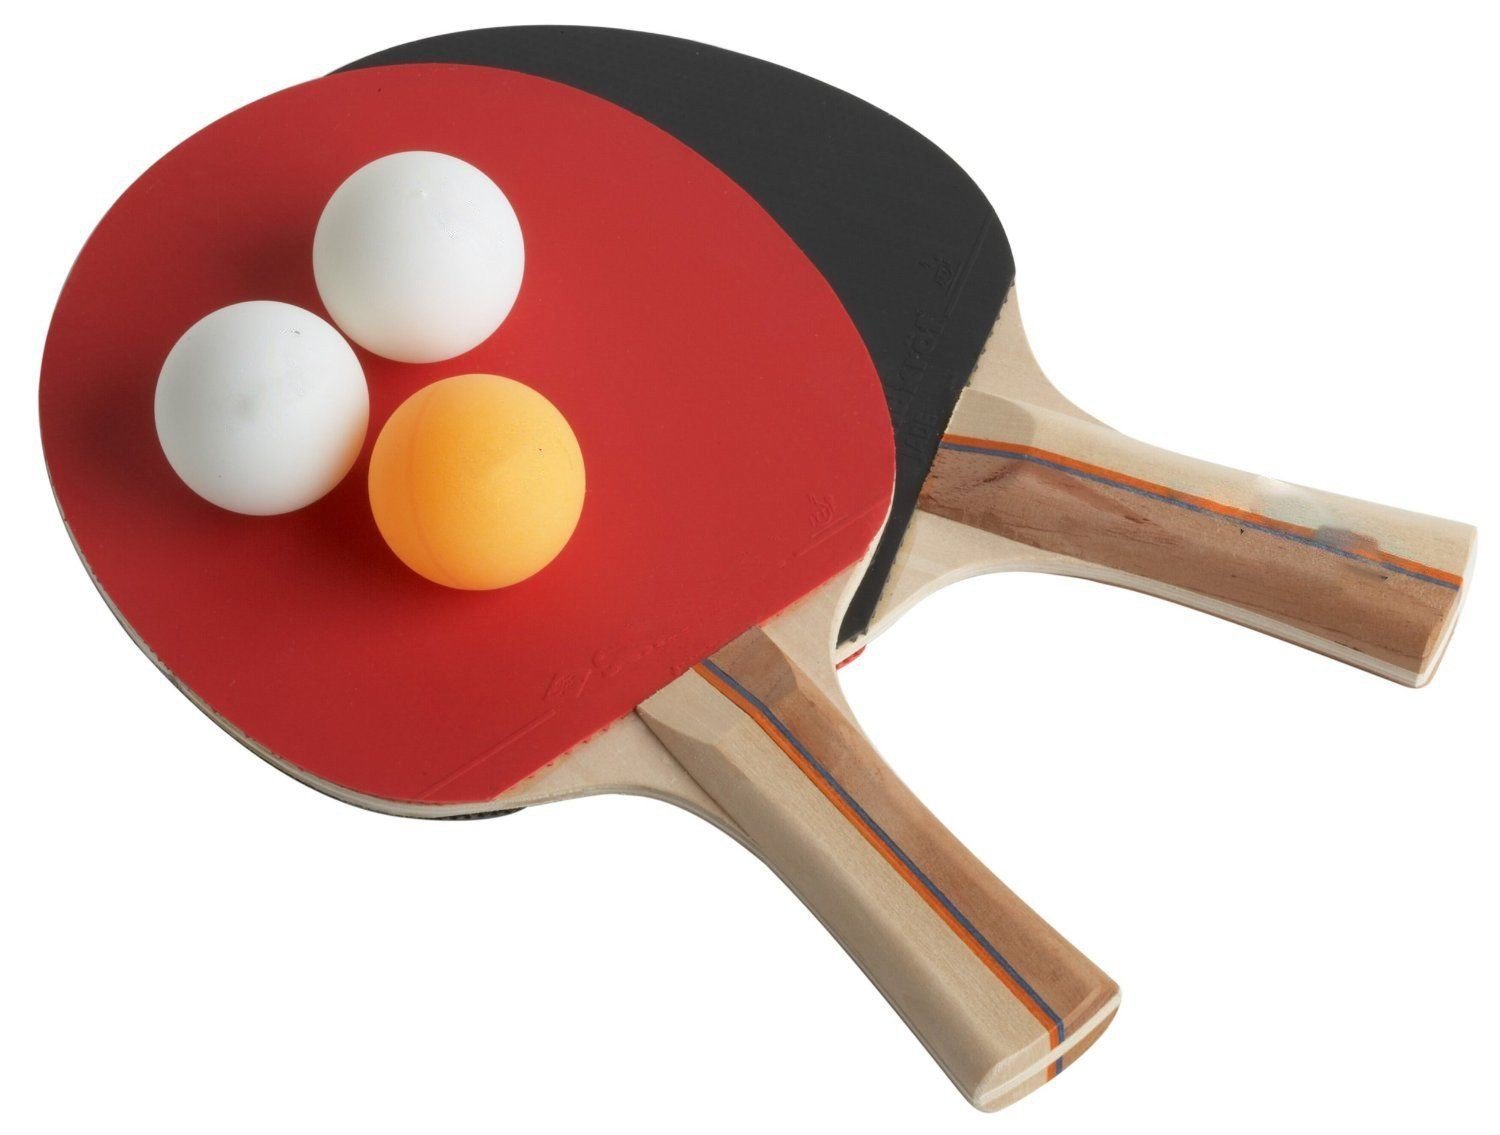 Palline da ping pong immagini e fotografie stock ad alta risoluzione - Alamy